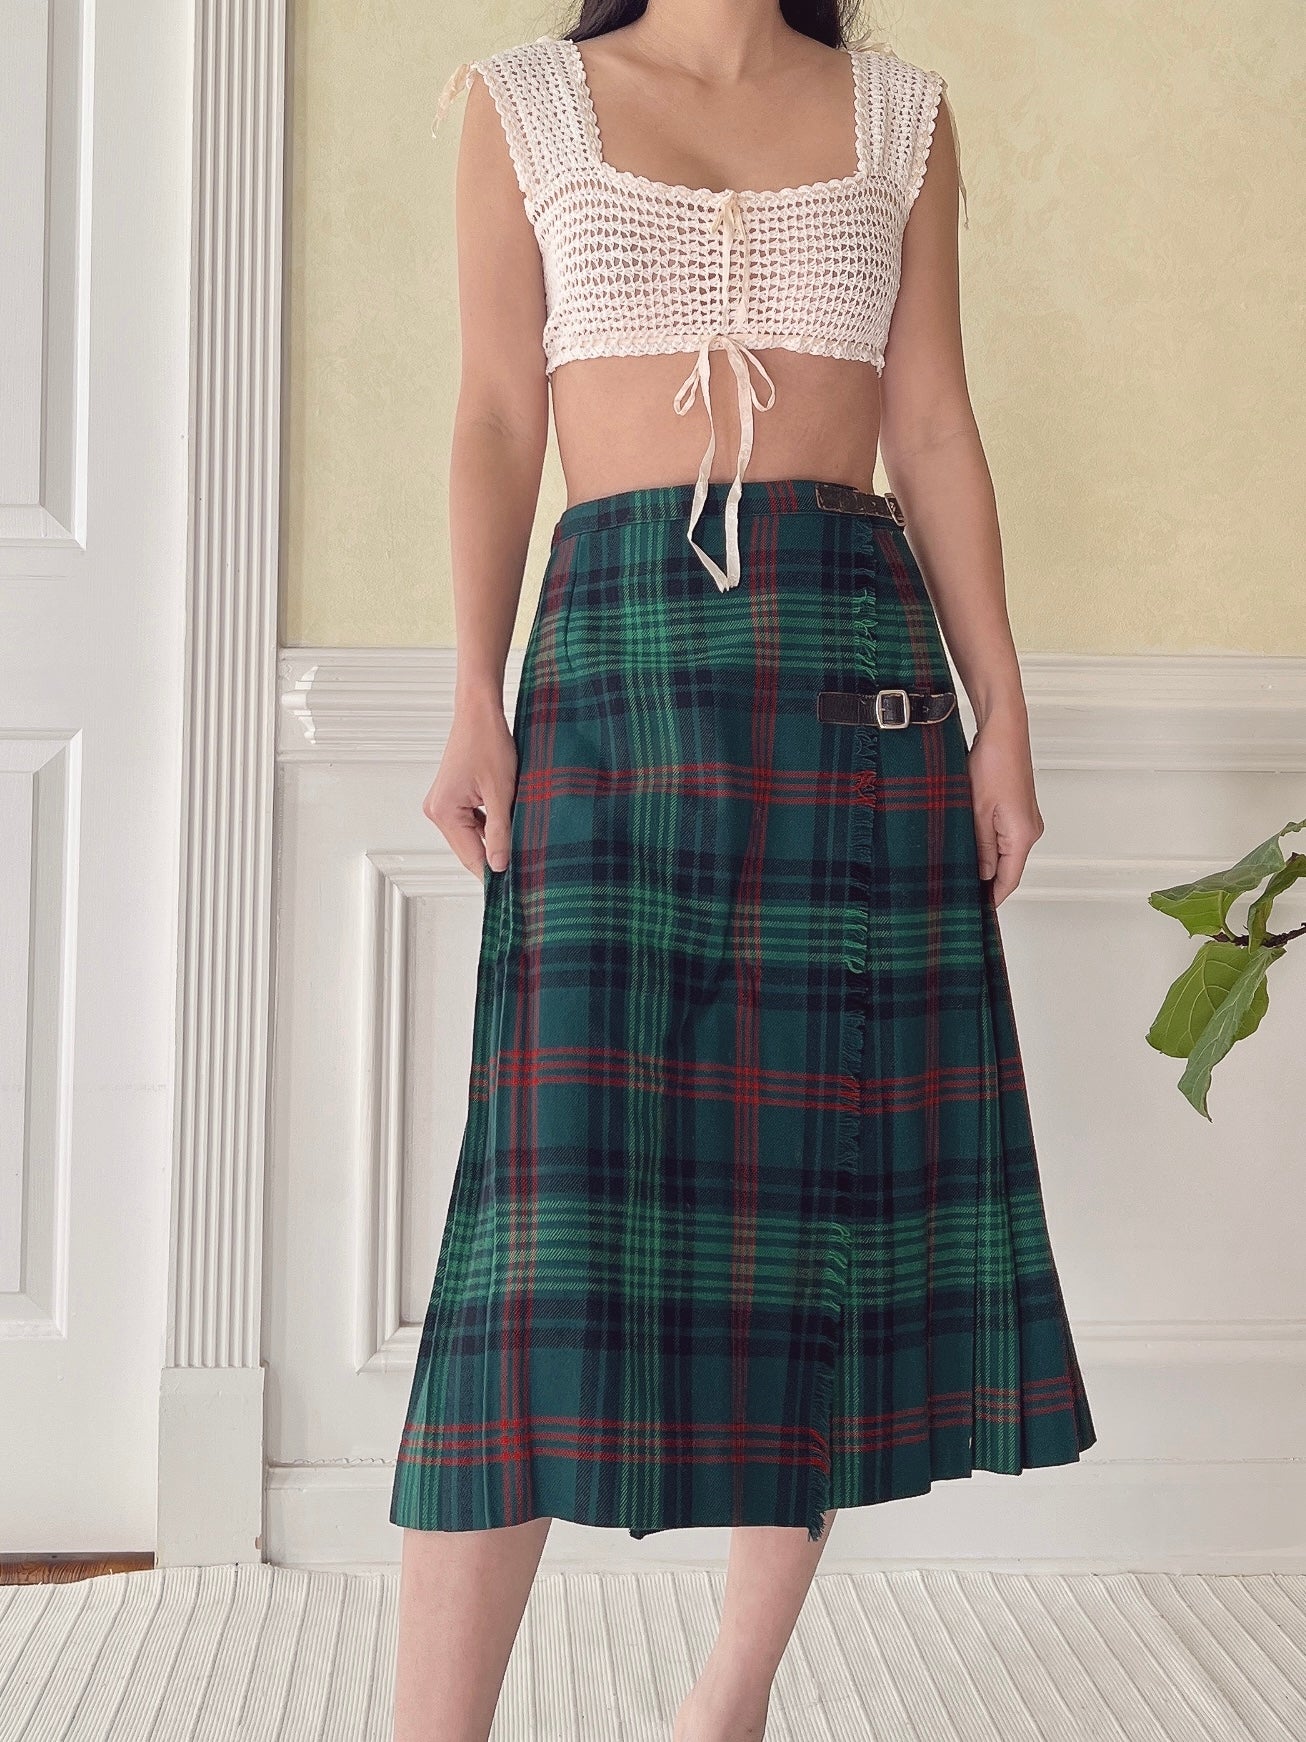 Vintage Wool Plaid Skirt - XS